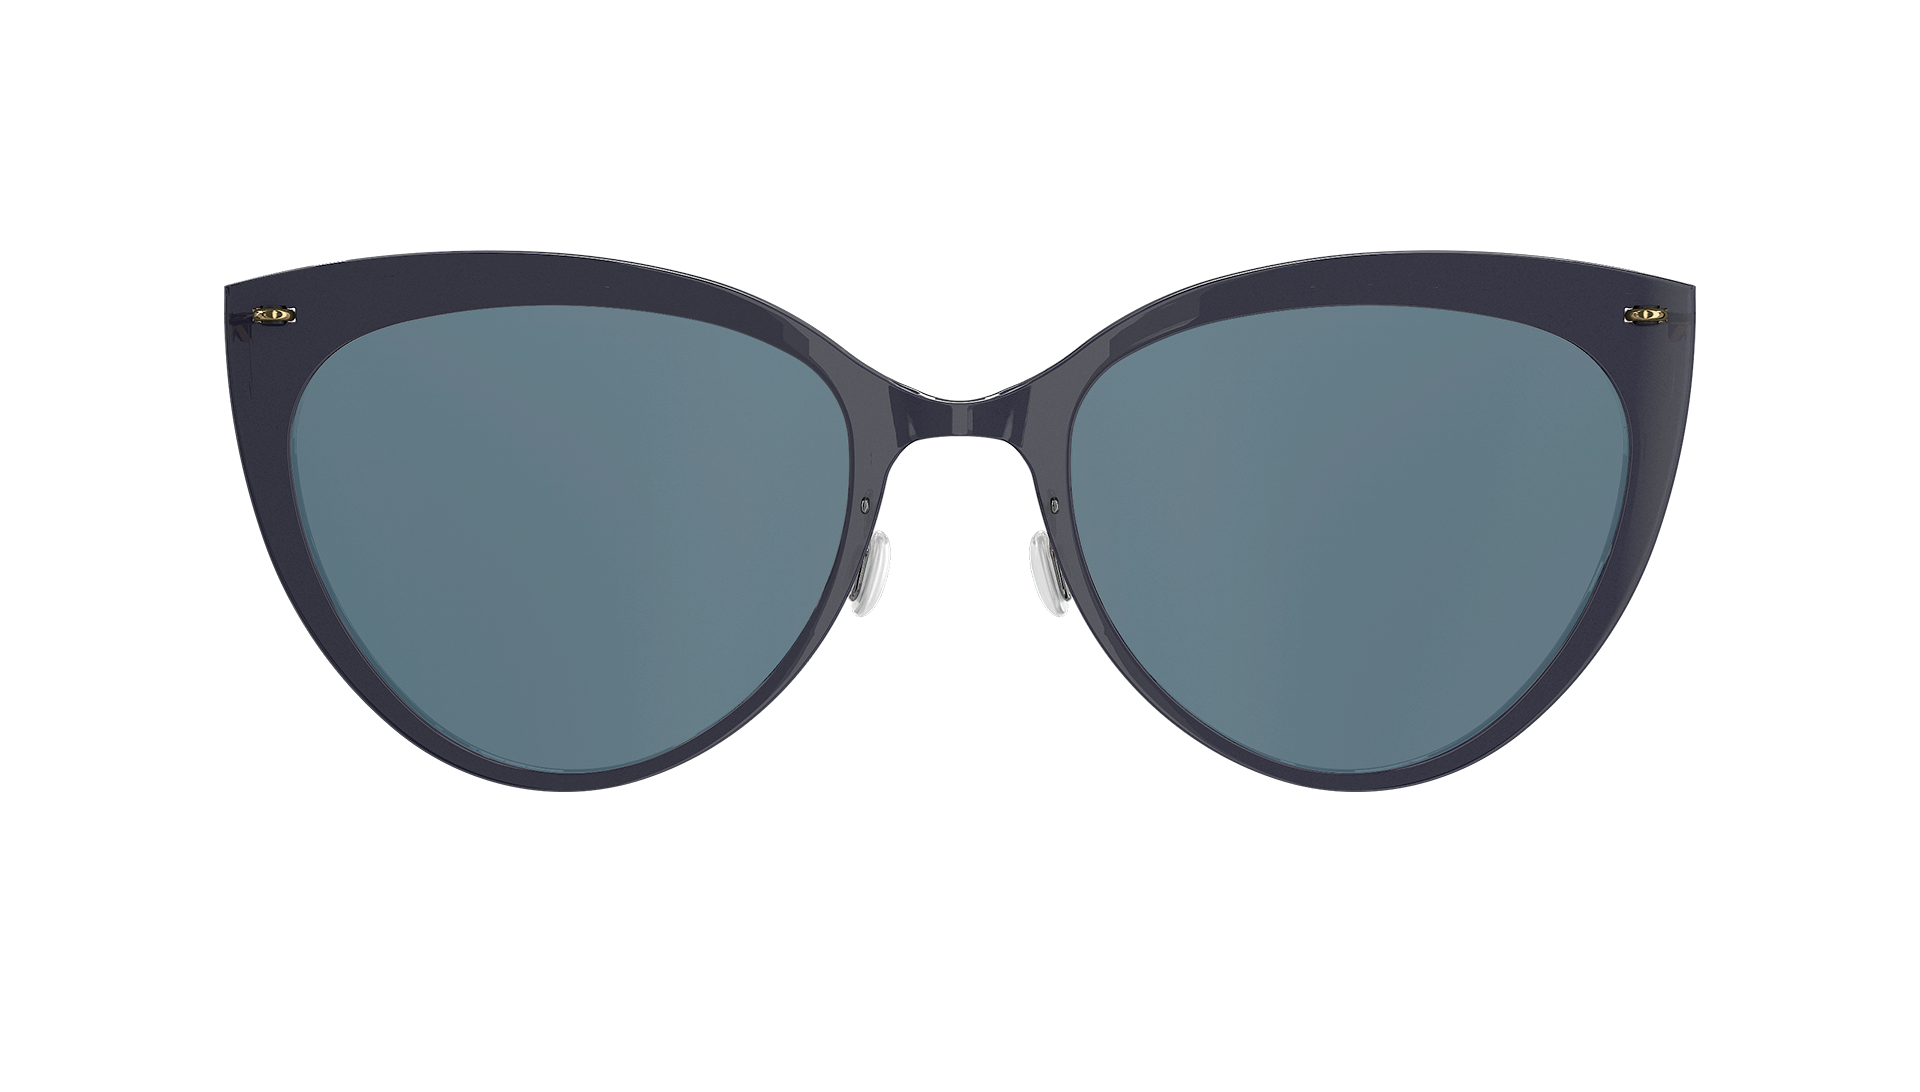 LINDBERG n.o.w., Modell 8311, schwarze Sonnenbrille im Cateye-Stil mit blaugrau getönten Gläsern